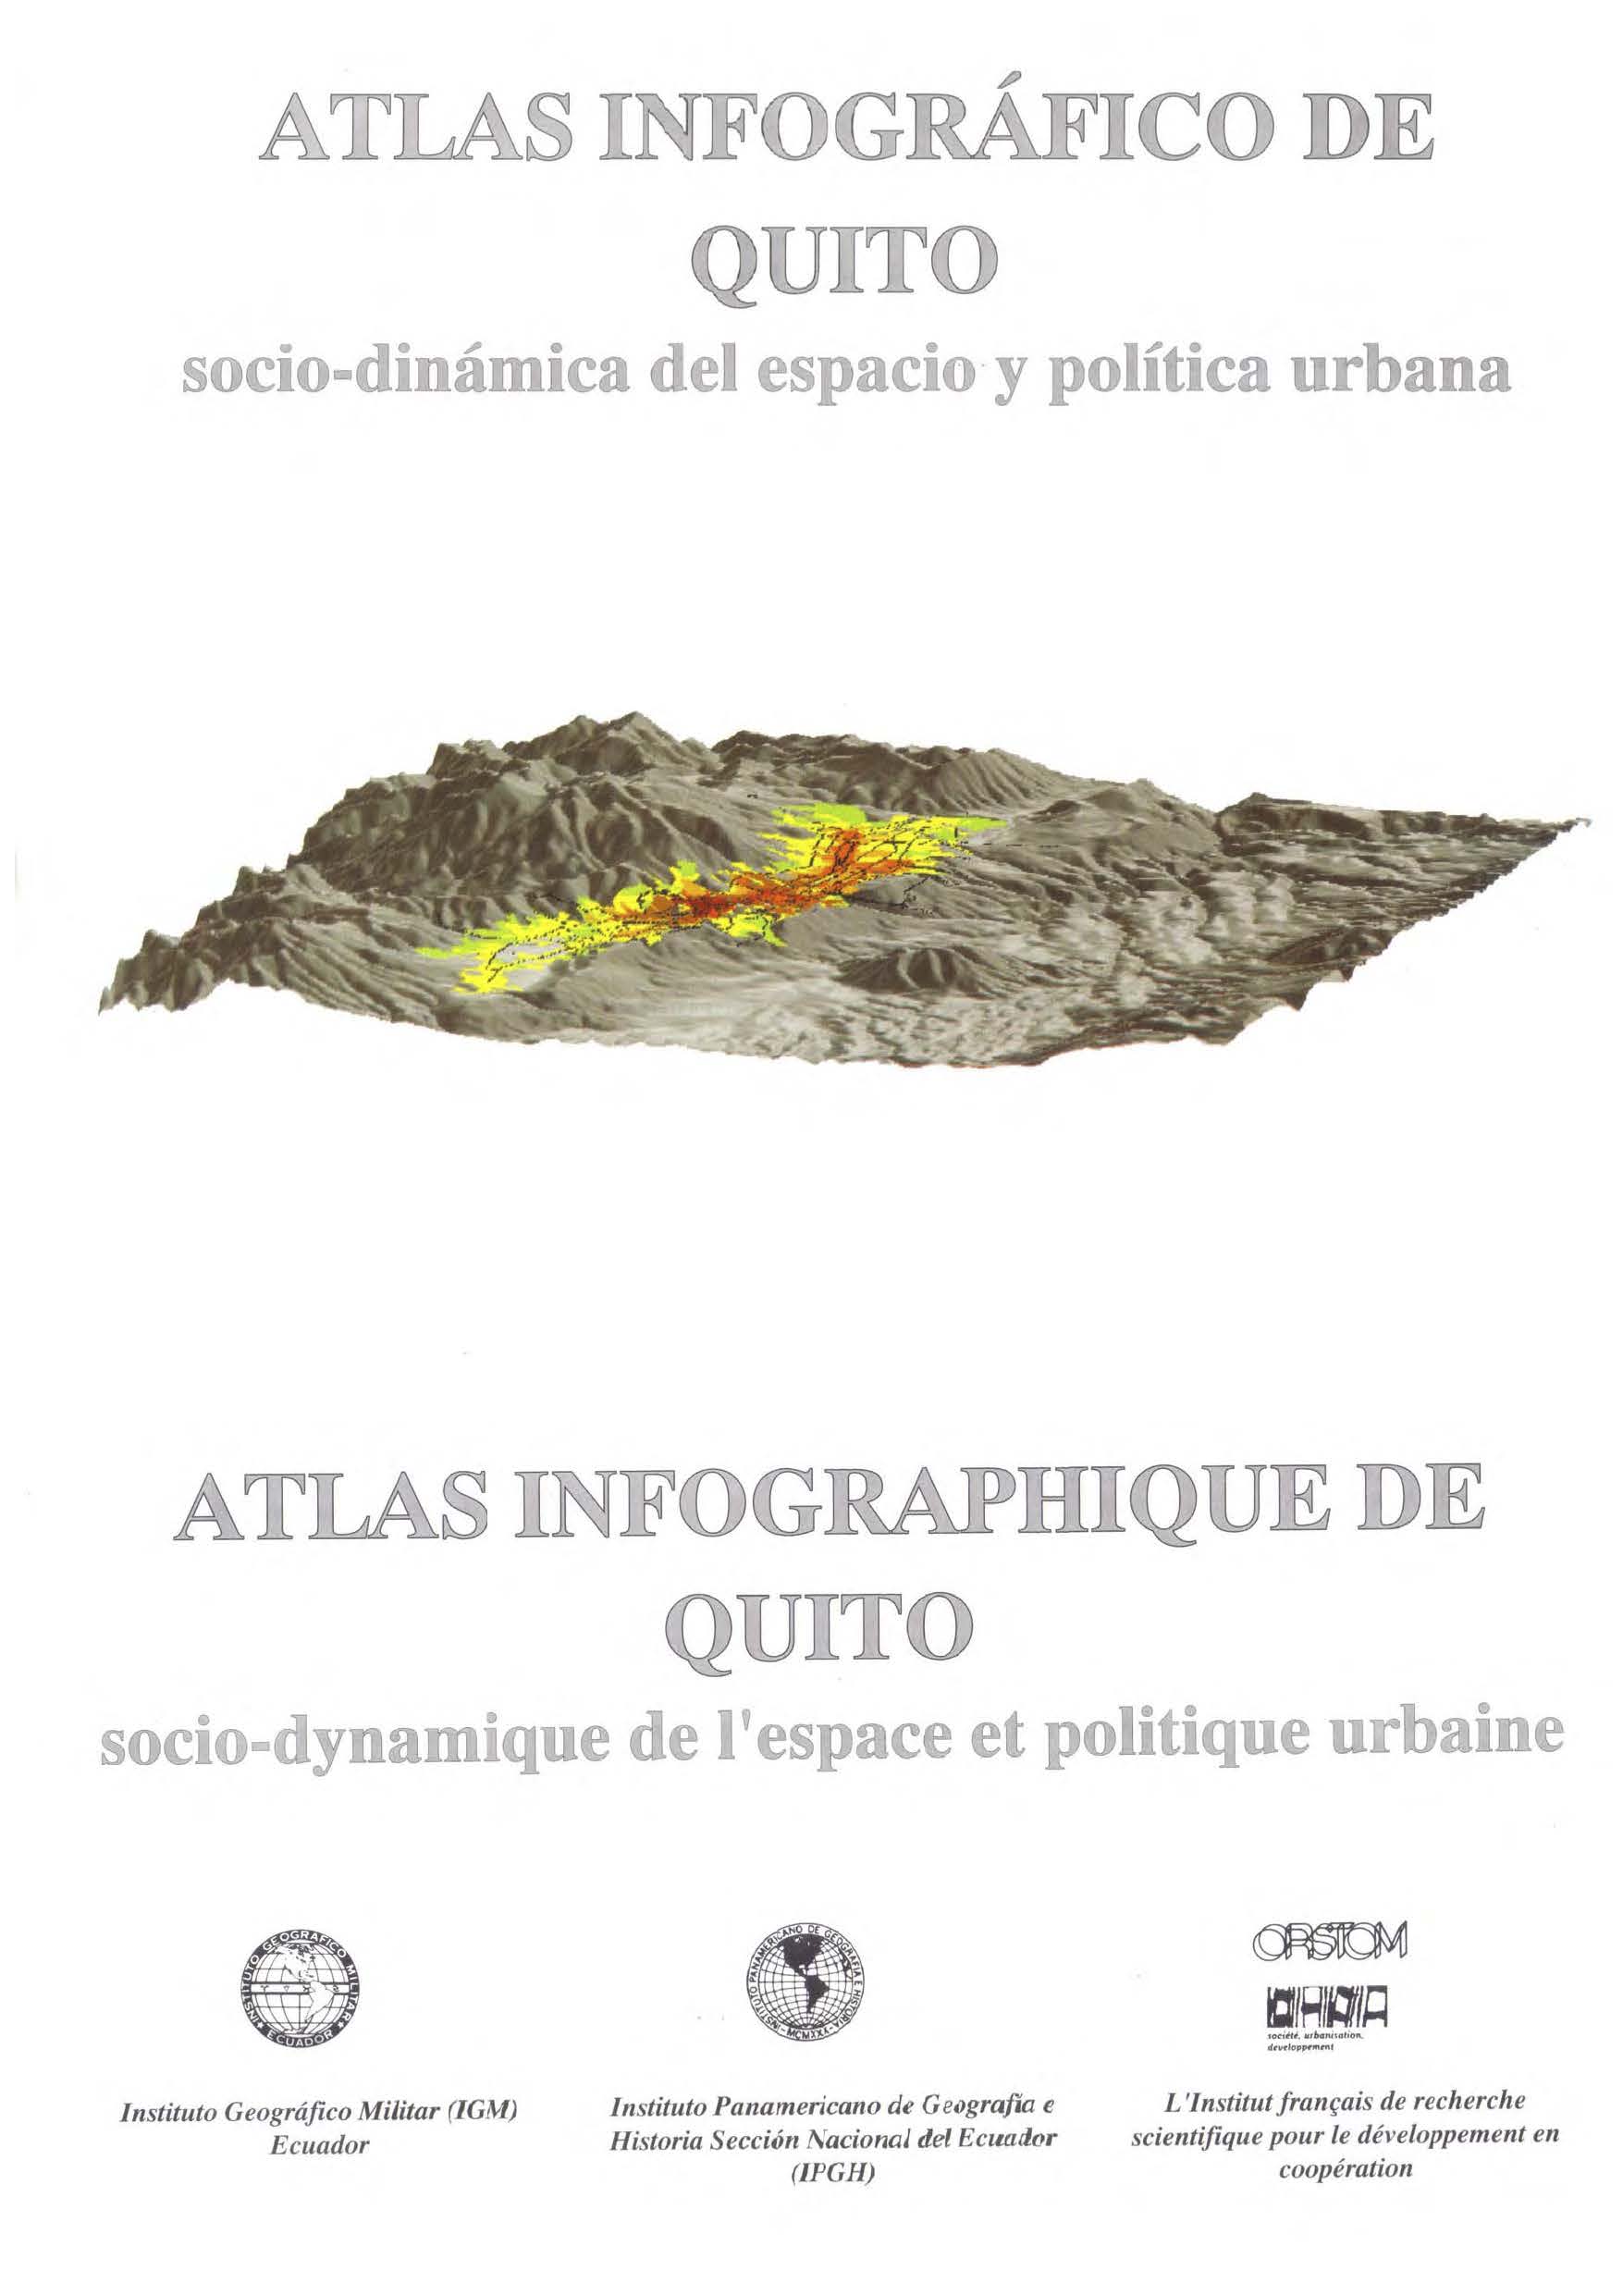 Atlas infográfico de Quito: socio-dinámica del espacio y política urbana<br/>Quito: IGM, IPGH, ORSTOM. 1992. [291] p. 